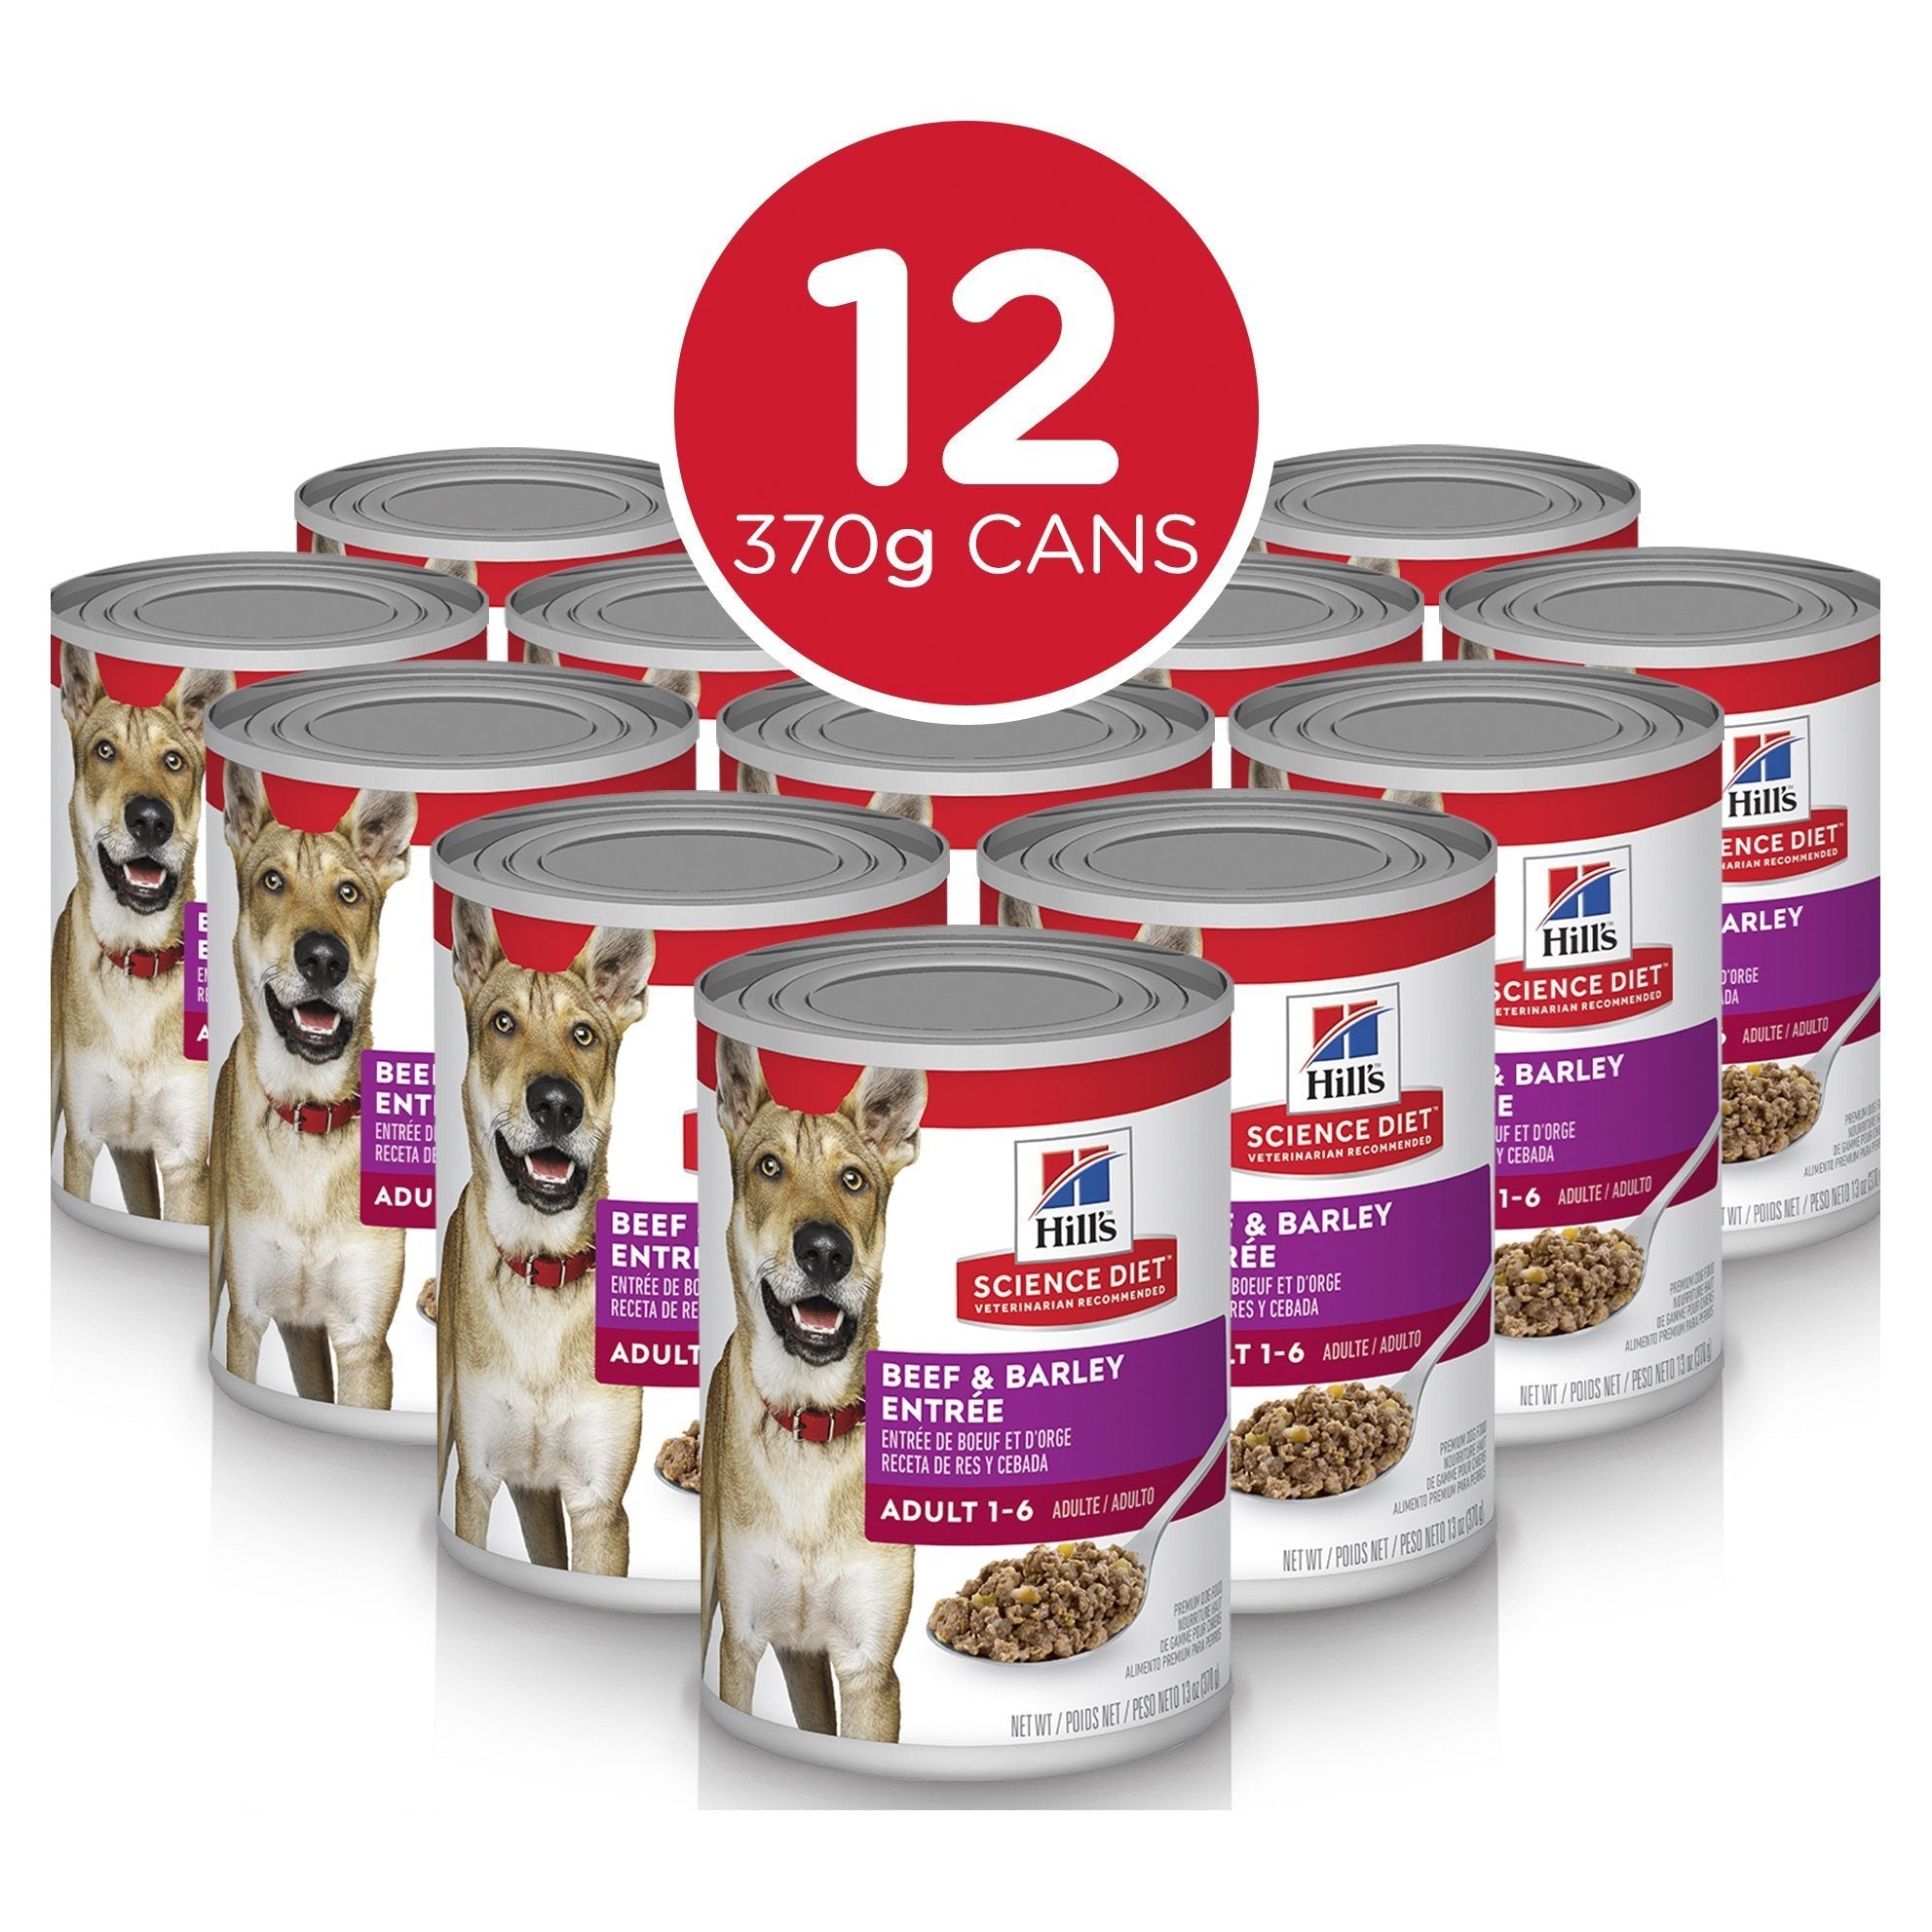 Hills Science Diet Adult Beef & Barley Entrée Canned Dog Food, 370g, 12 Pack